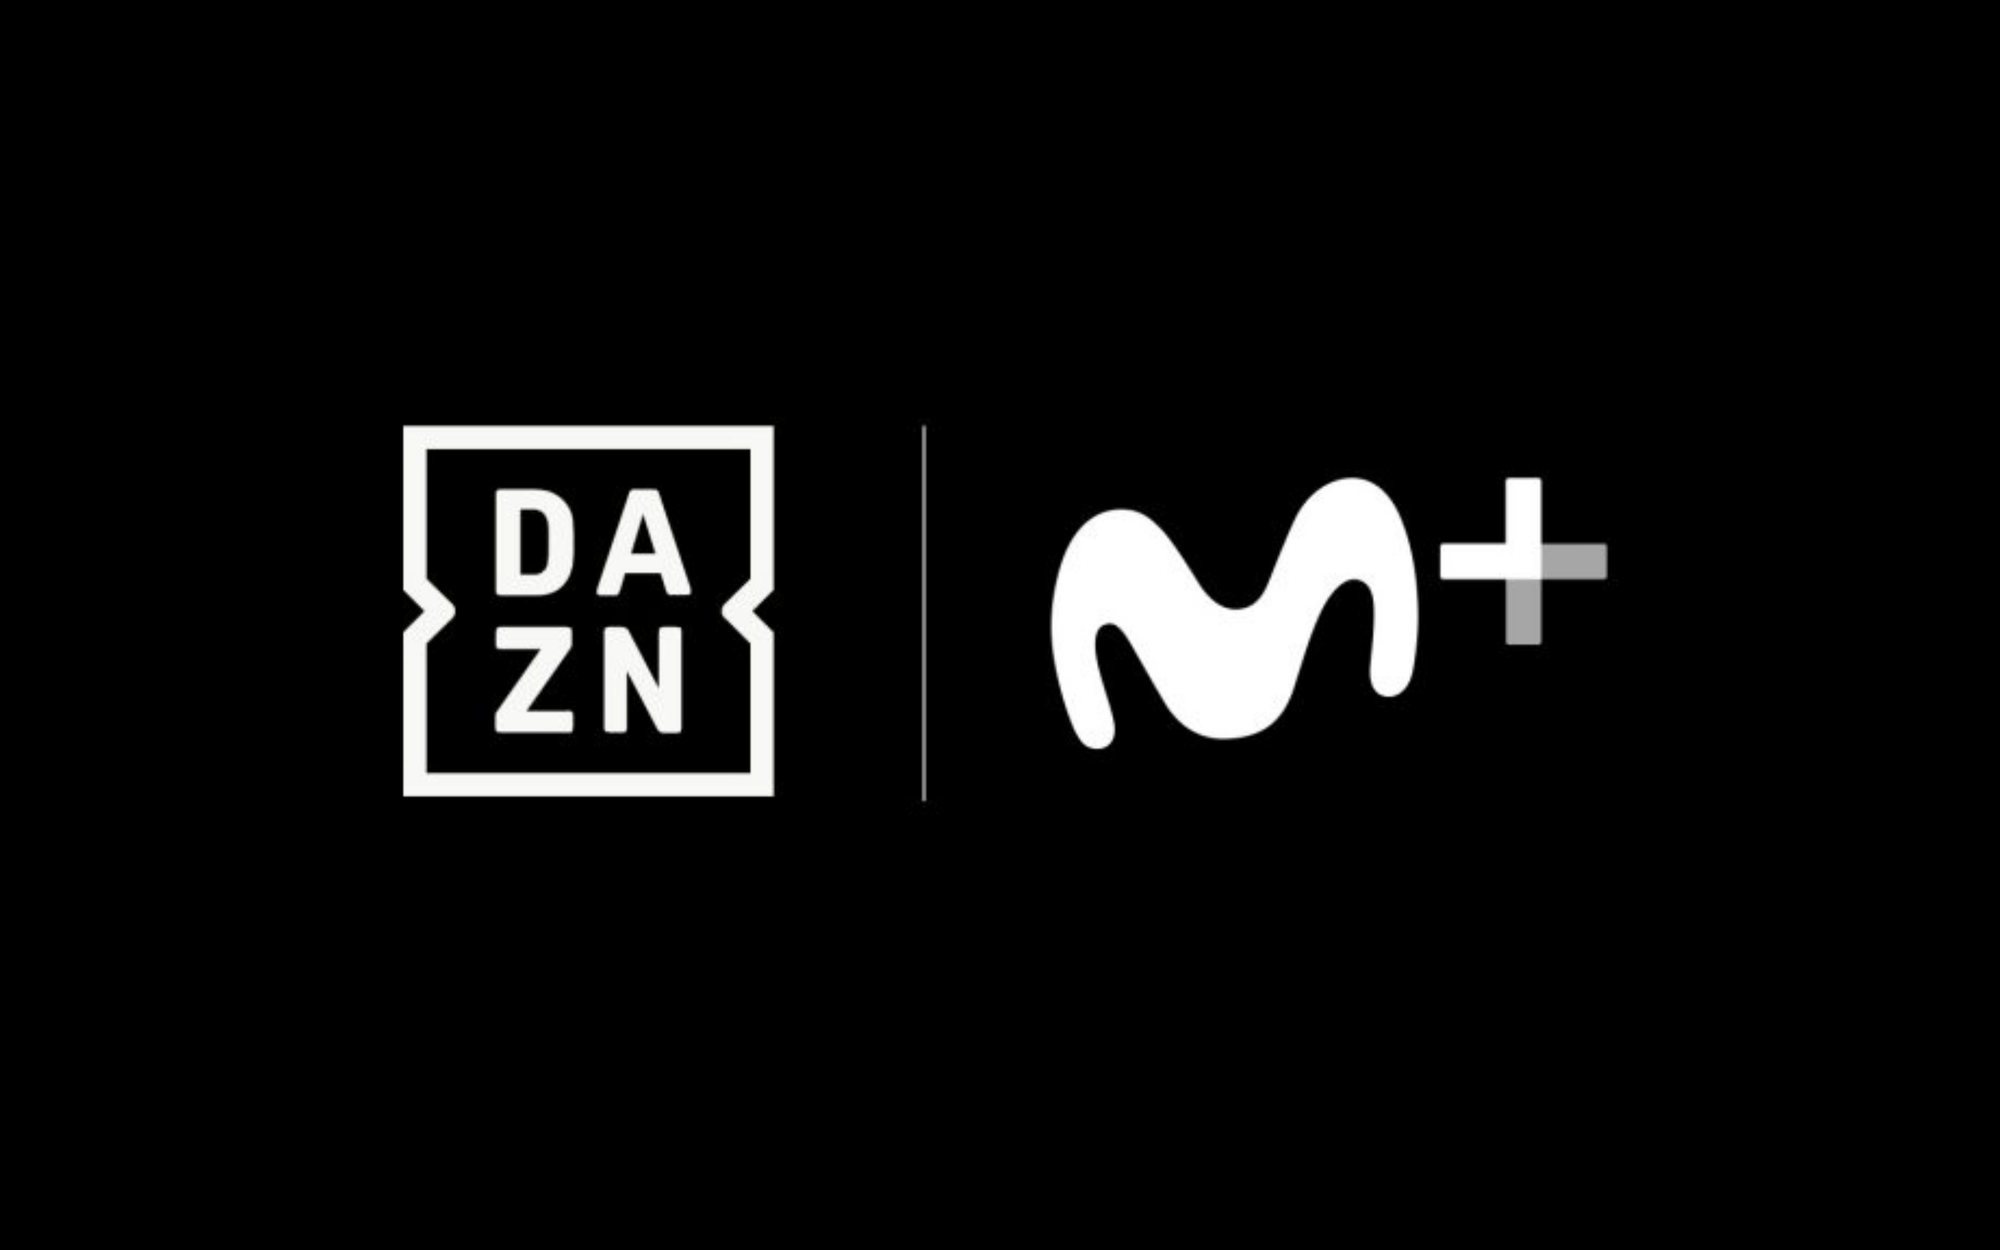 DAZN se une a Movistar+ para ampliar la oferta de contenido deportivo de la plataforma